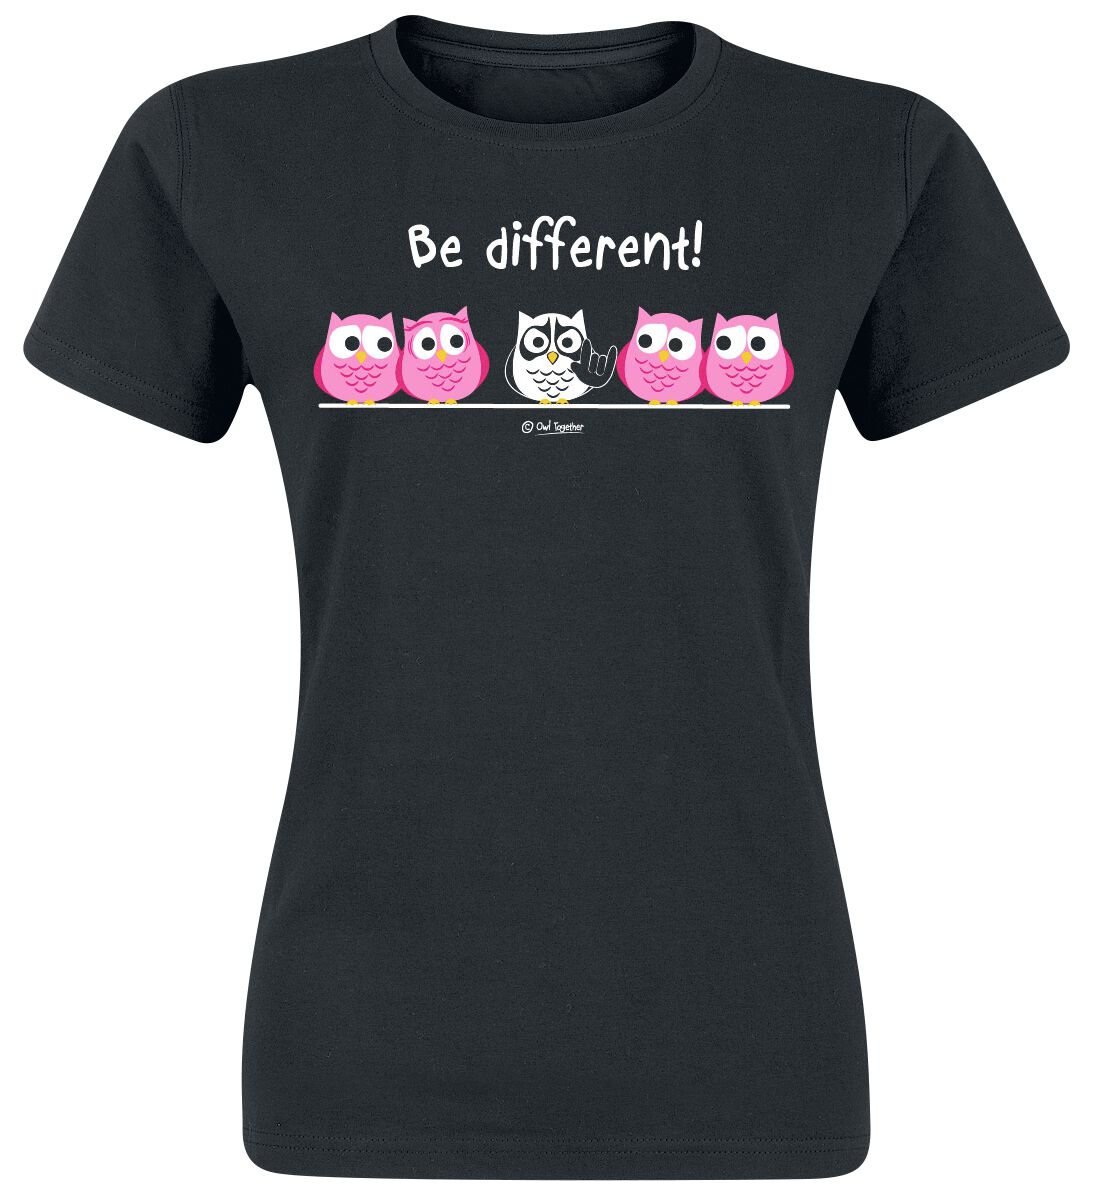 Be Different! T-Shirt - Be Different! - Metal - XXL bis 3XL - für Damen - Größe 3XL - schwarz